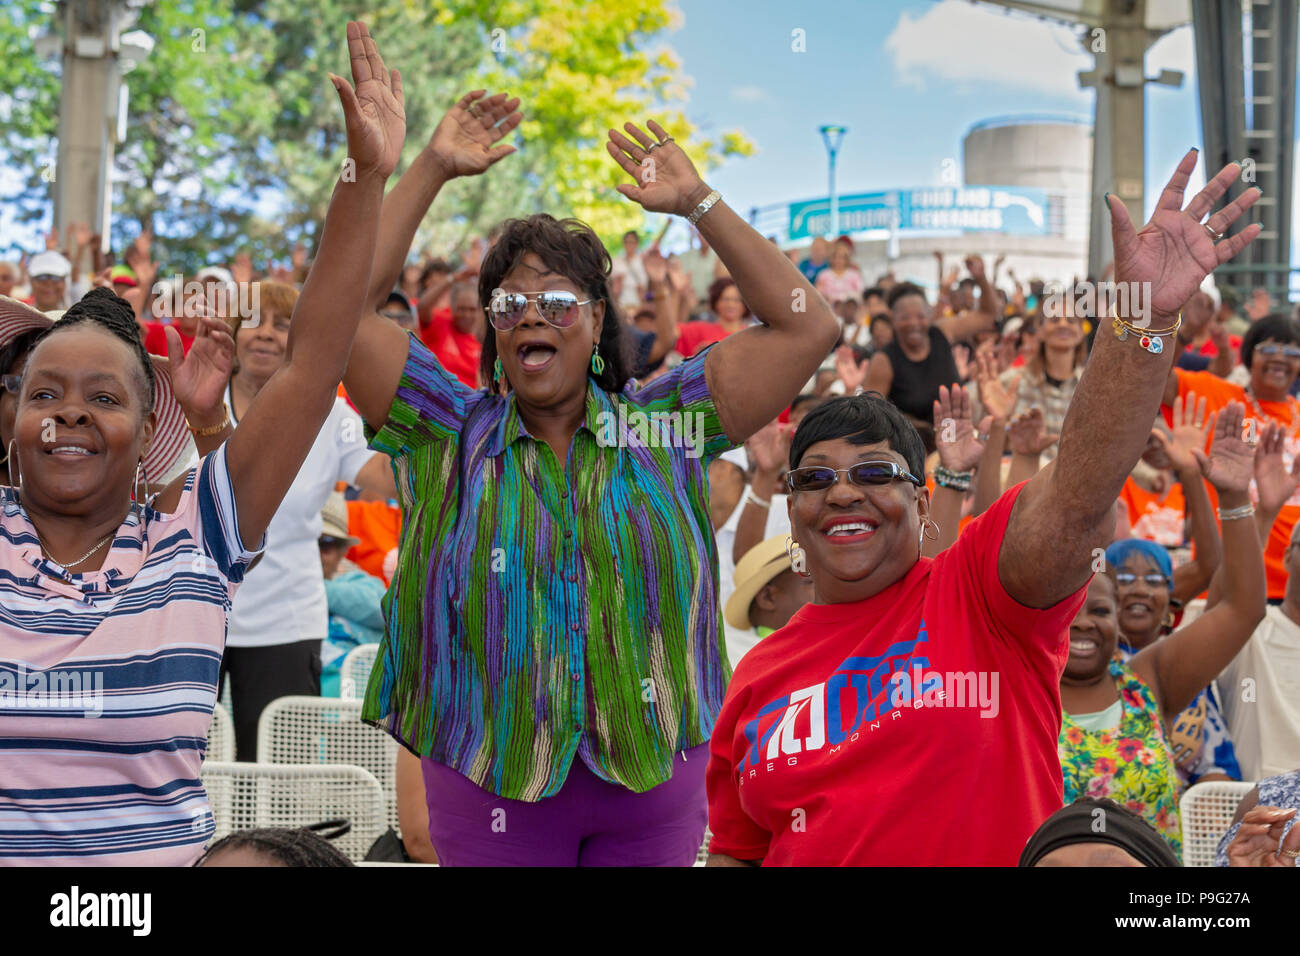 Detroit, Michigan - Senior amicizia Day, un evento che ha portato migliaia di cittadini anziani di Chene Park per la musica, balli e cibo. Le anche Foto Stock